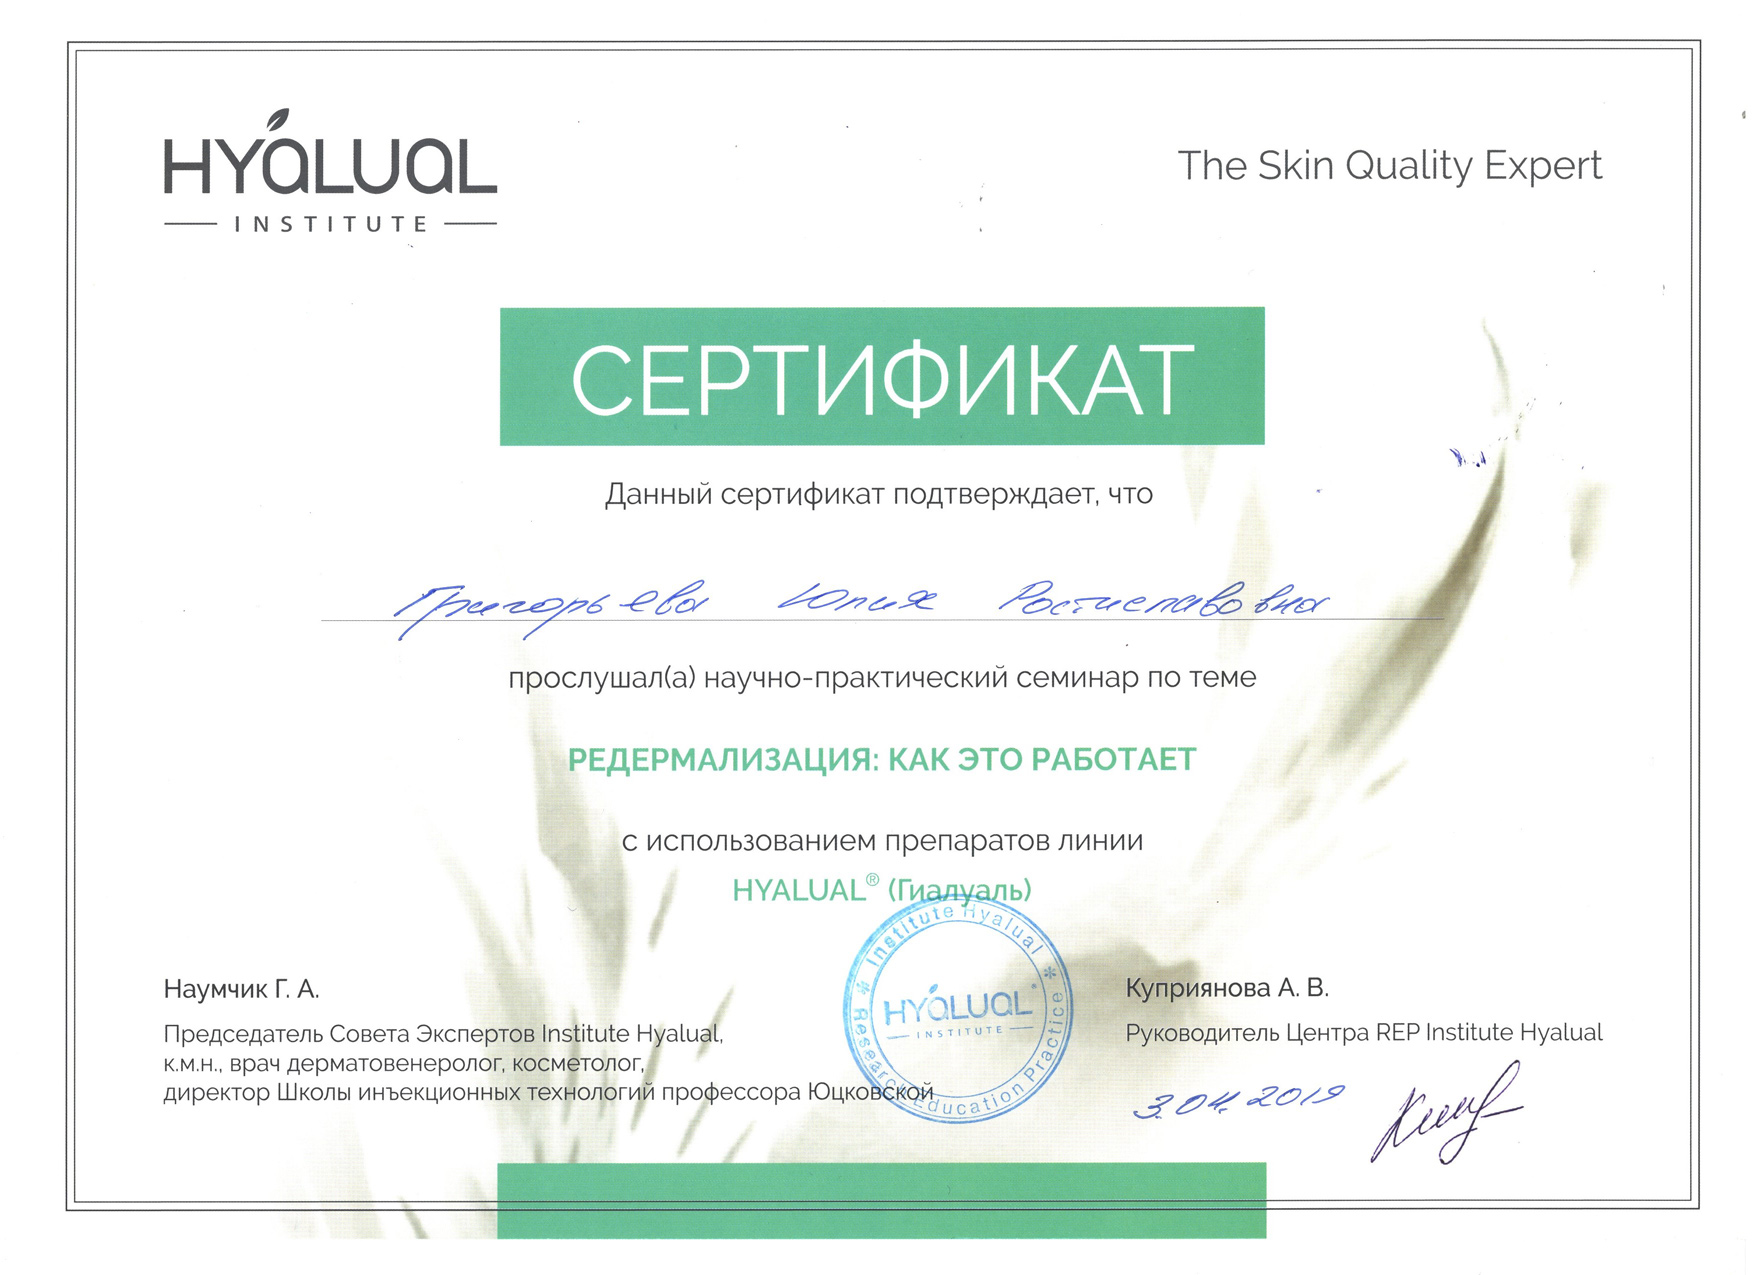 Сертификат — Редермализация. Григорьева Юлия Ростиславовна